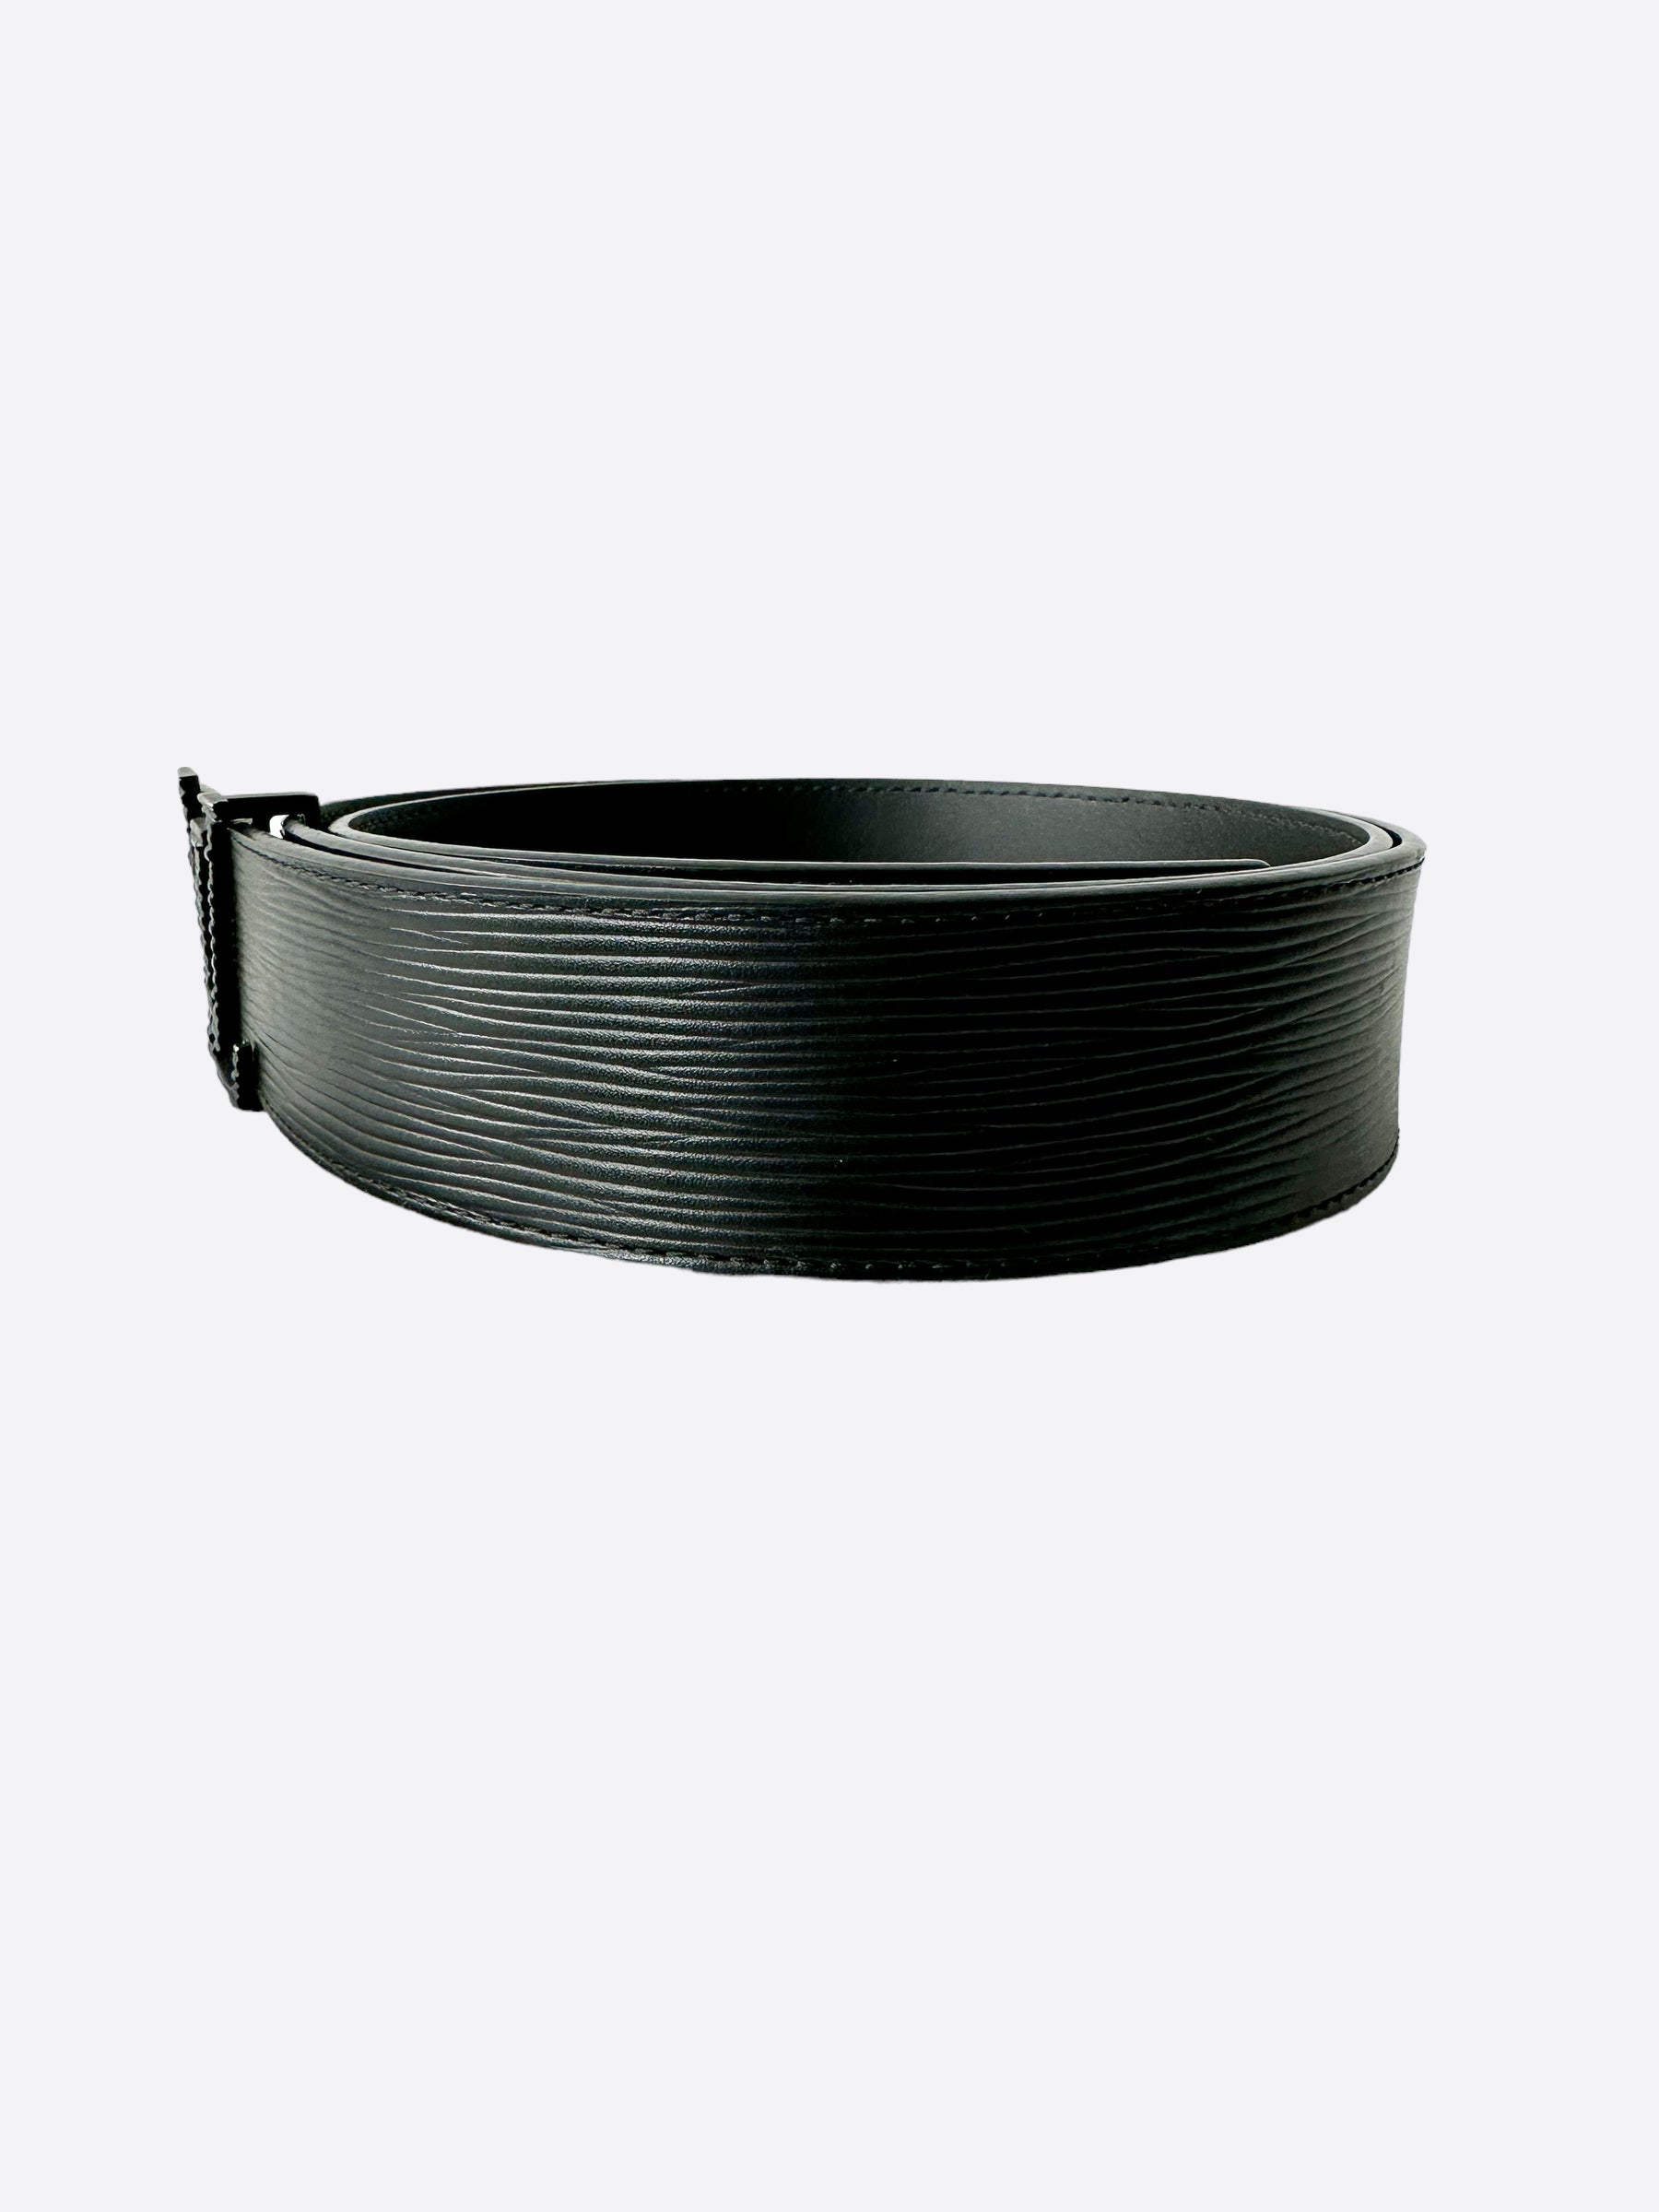 Louis Vuitton Black Epi Leather Initials Belt Size 95 CM Louis Vuitton